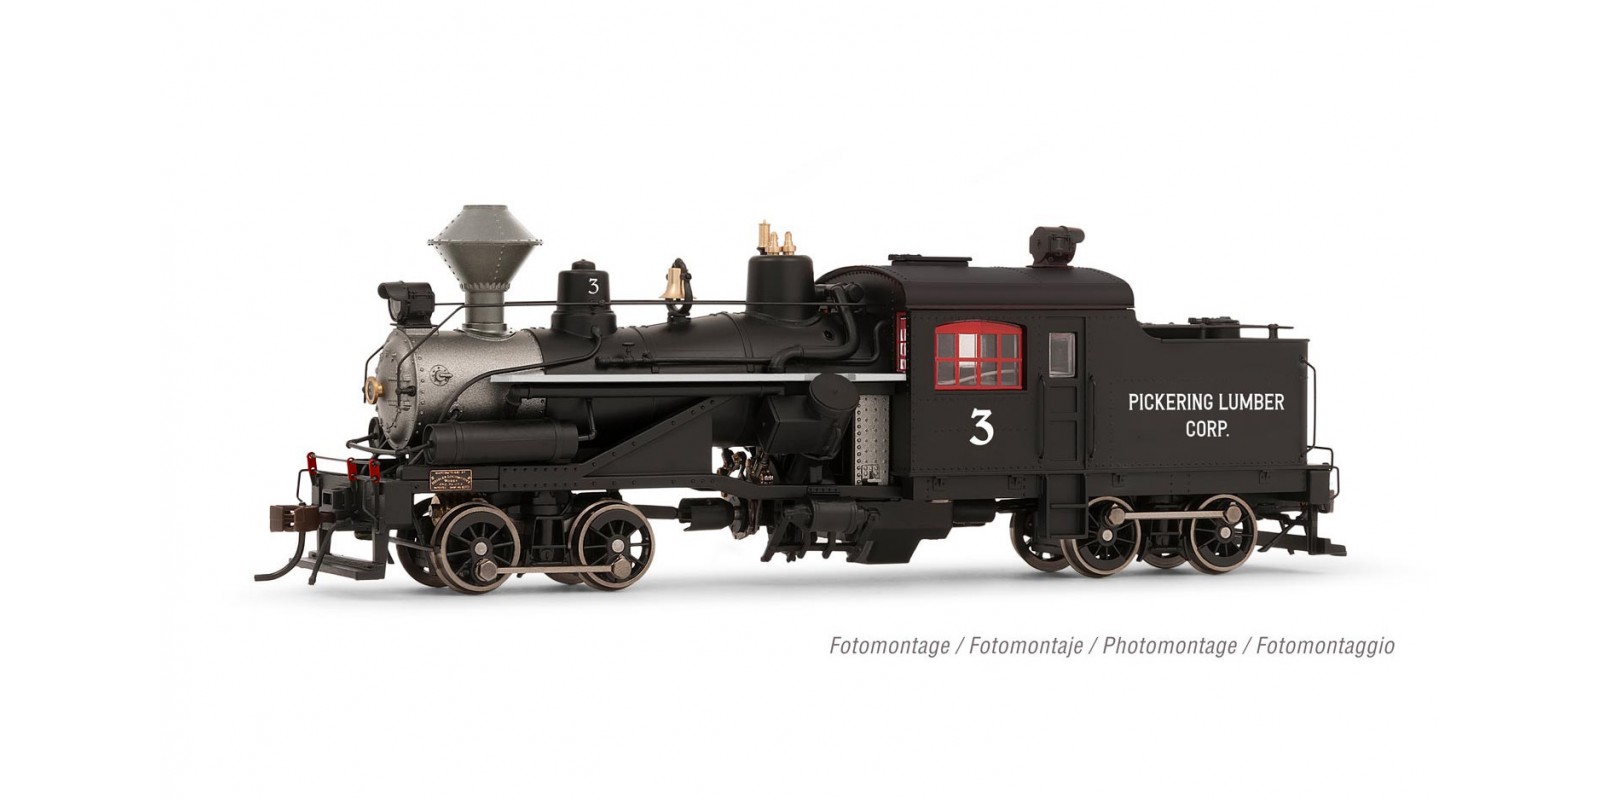 RI2881 Heisler steam locomotive, 2 trucks "Pickering Lumber Corp.", no. 3